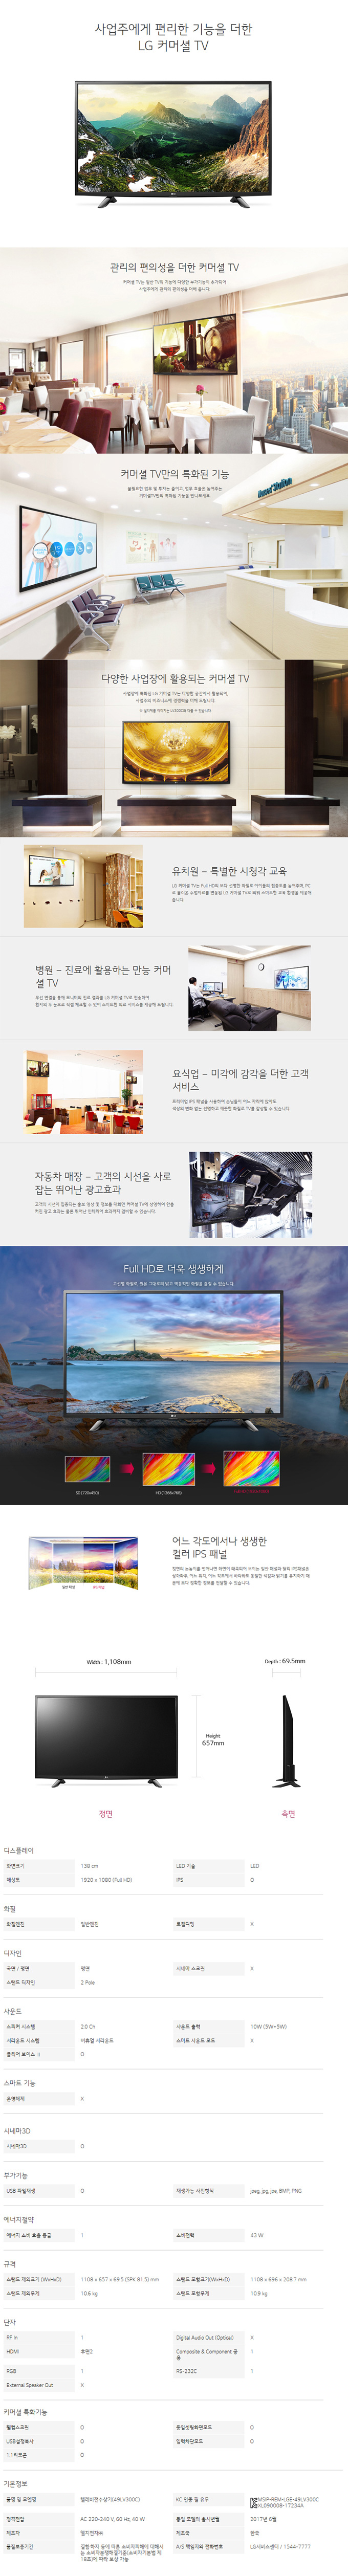 중앙케이블 - LG 49인치 LED TV (49LV300C) 상세보기